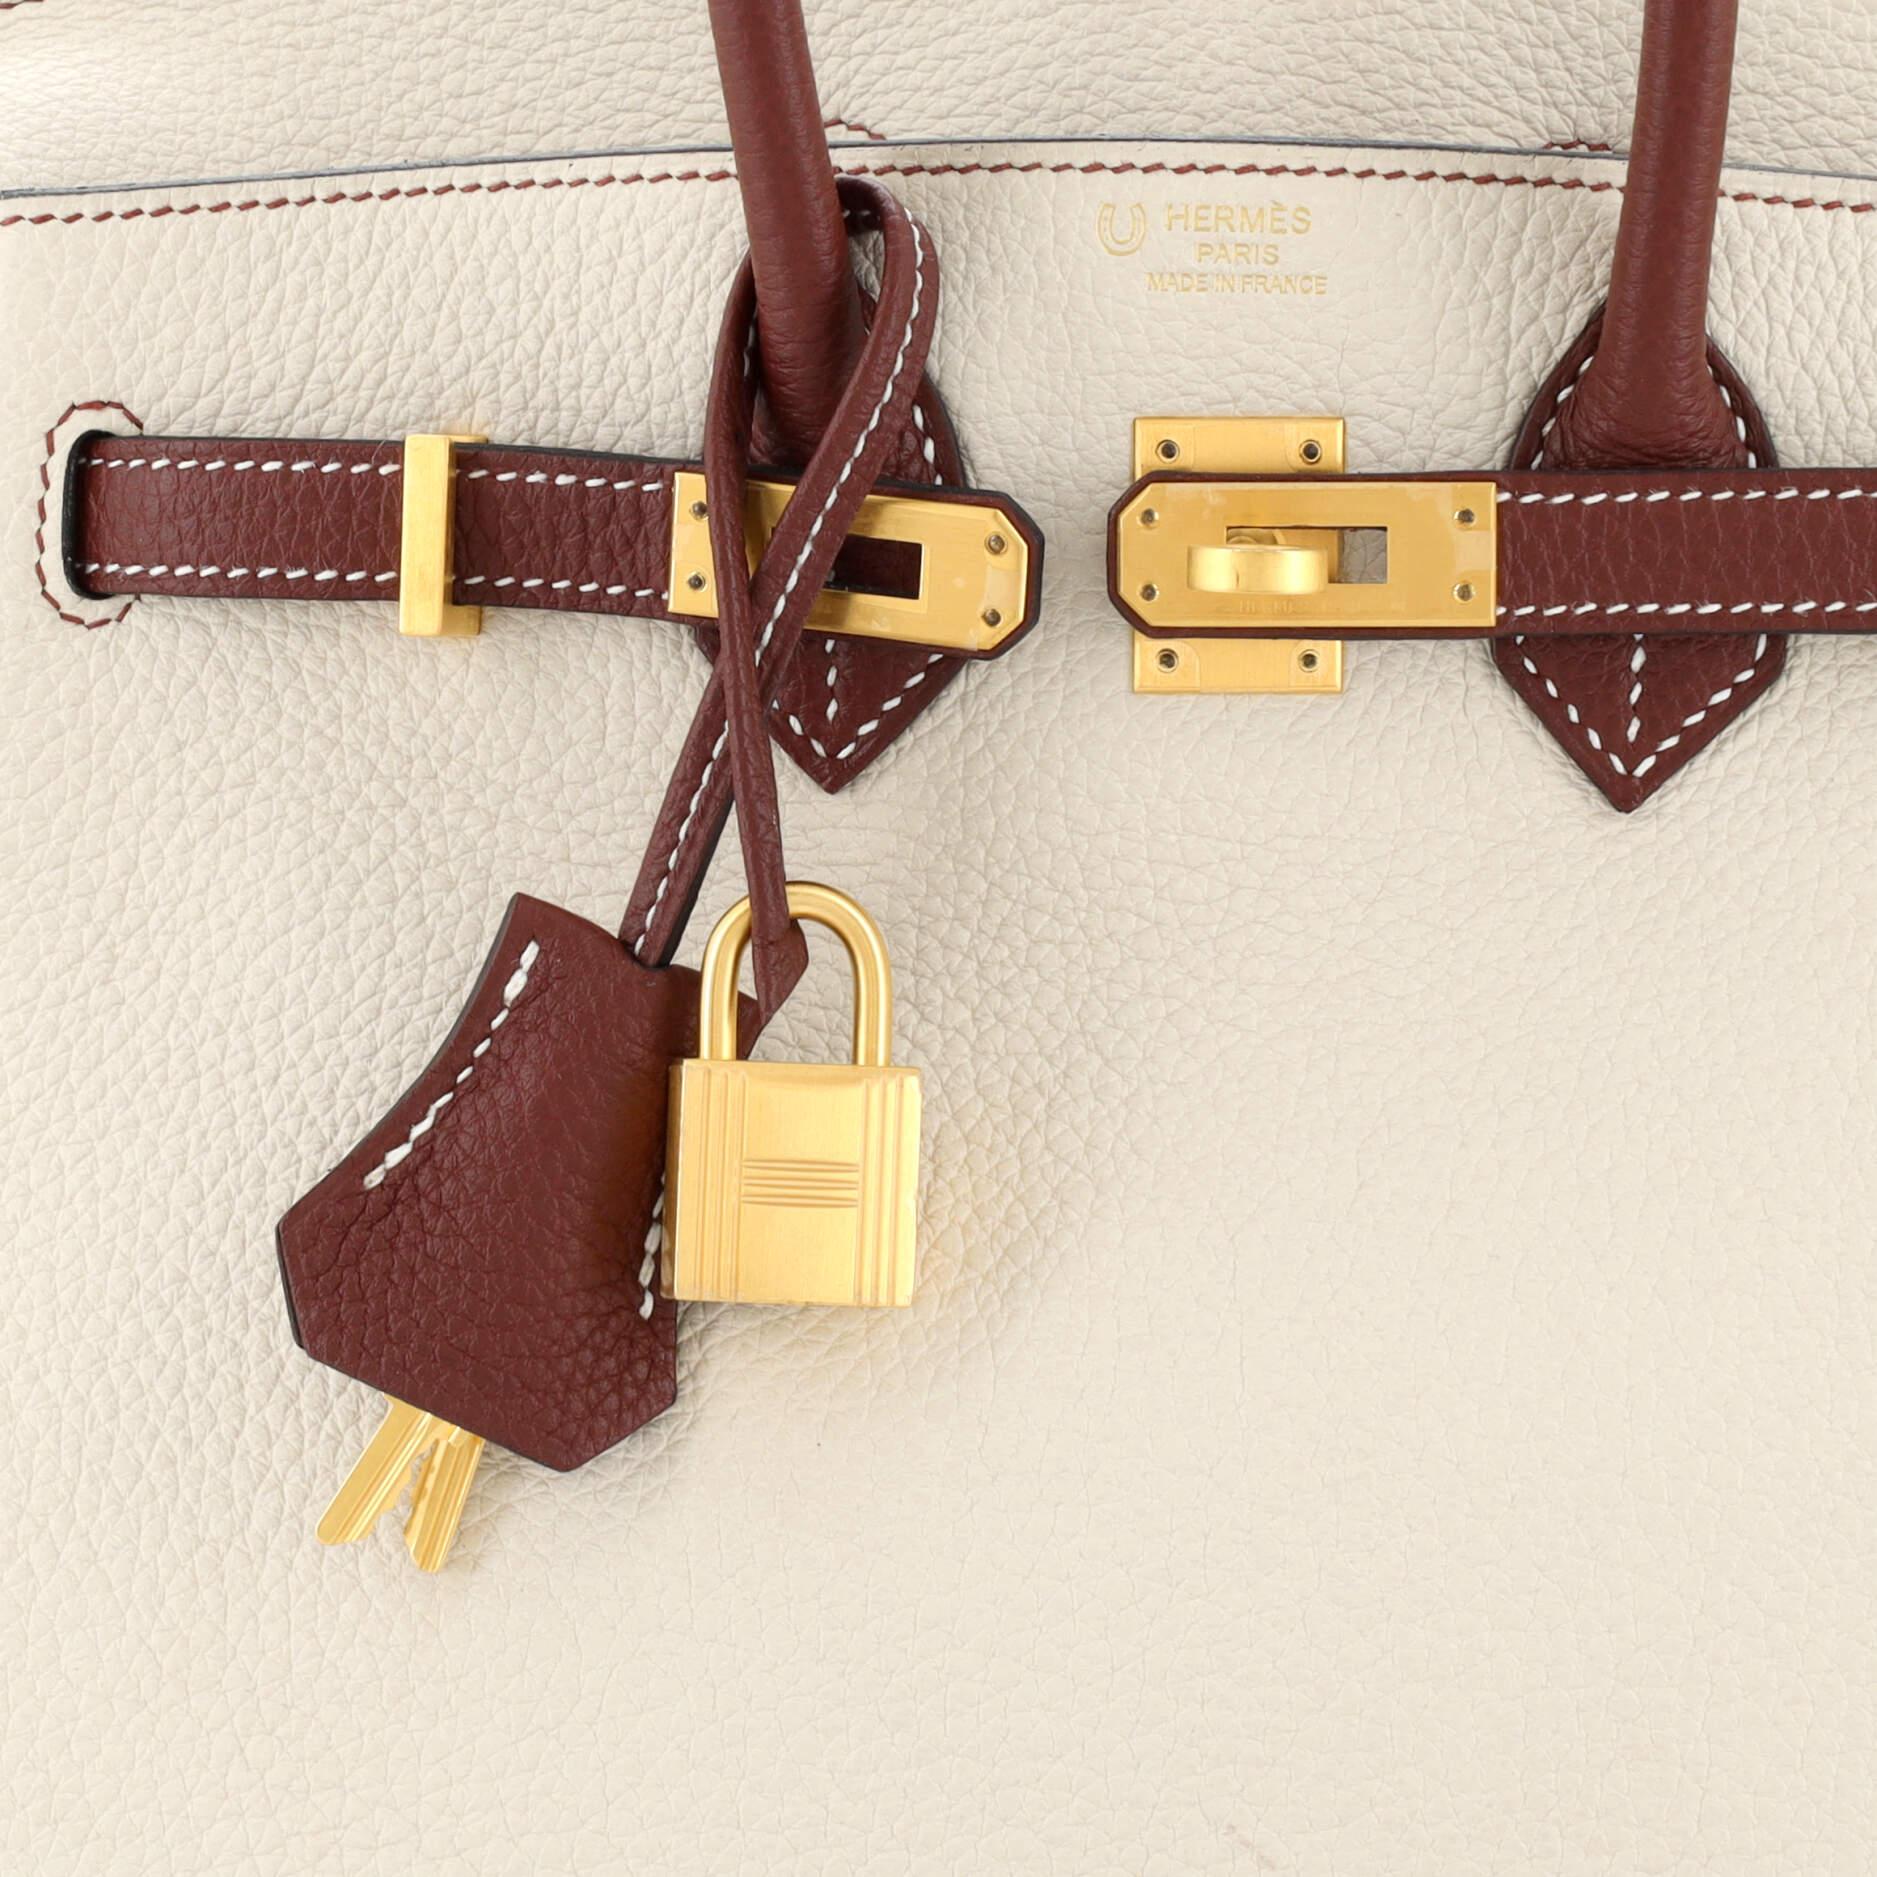 Hermes Birkin Handbag Bicolor Clemence with Brushed Gold Hardware 25 For Sale 2